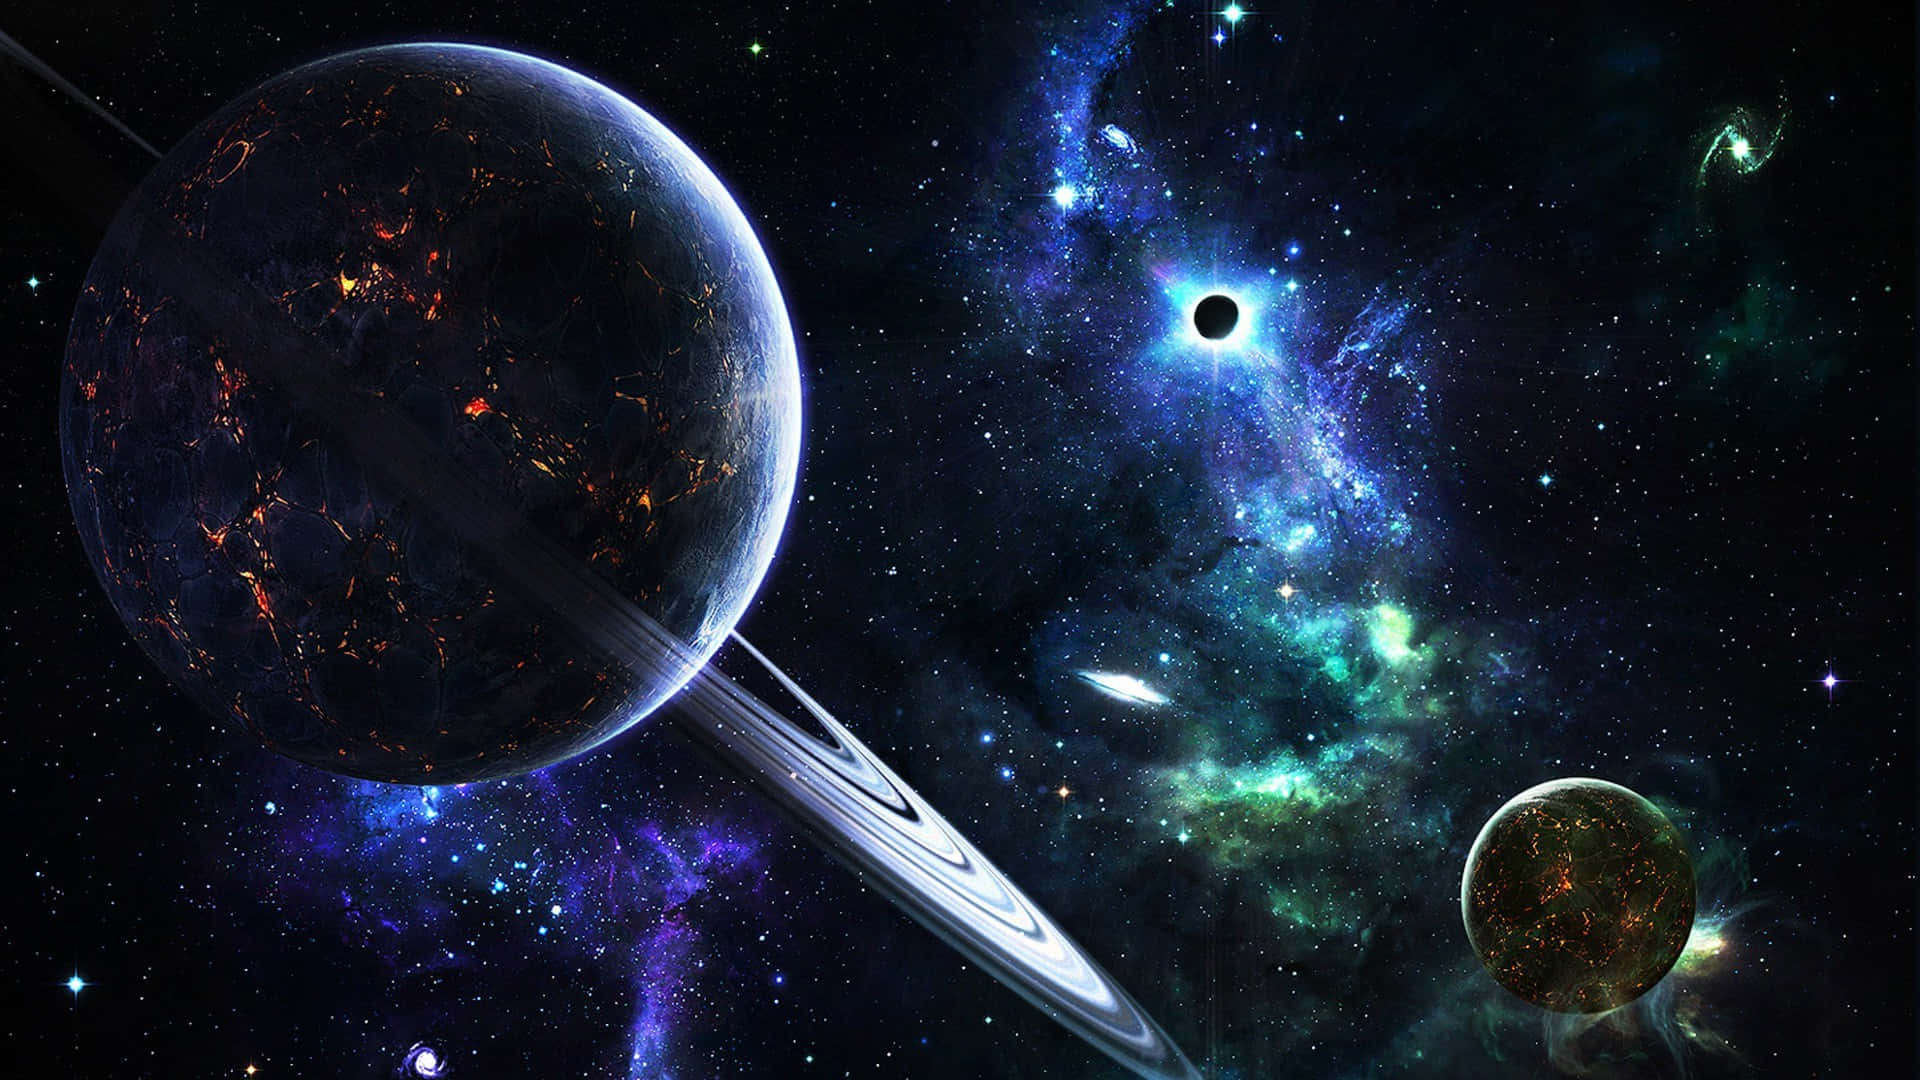 Eineätherische Welt | Galaxy Planet Wallpaper